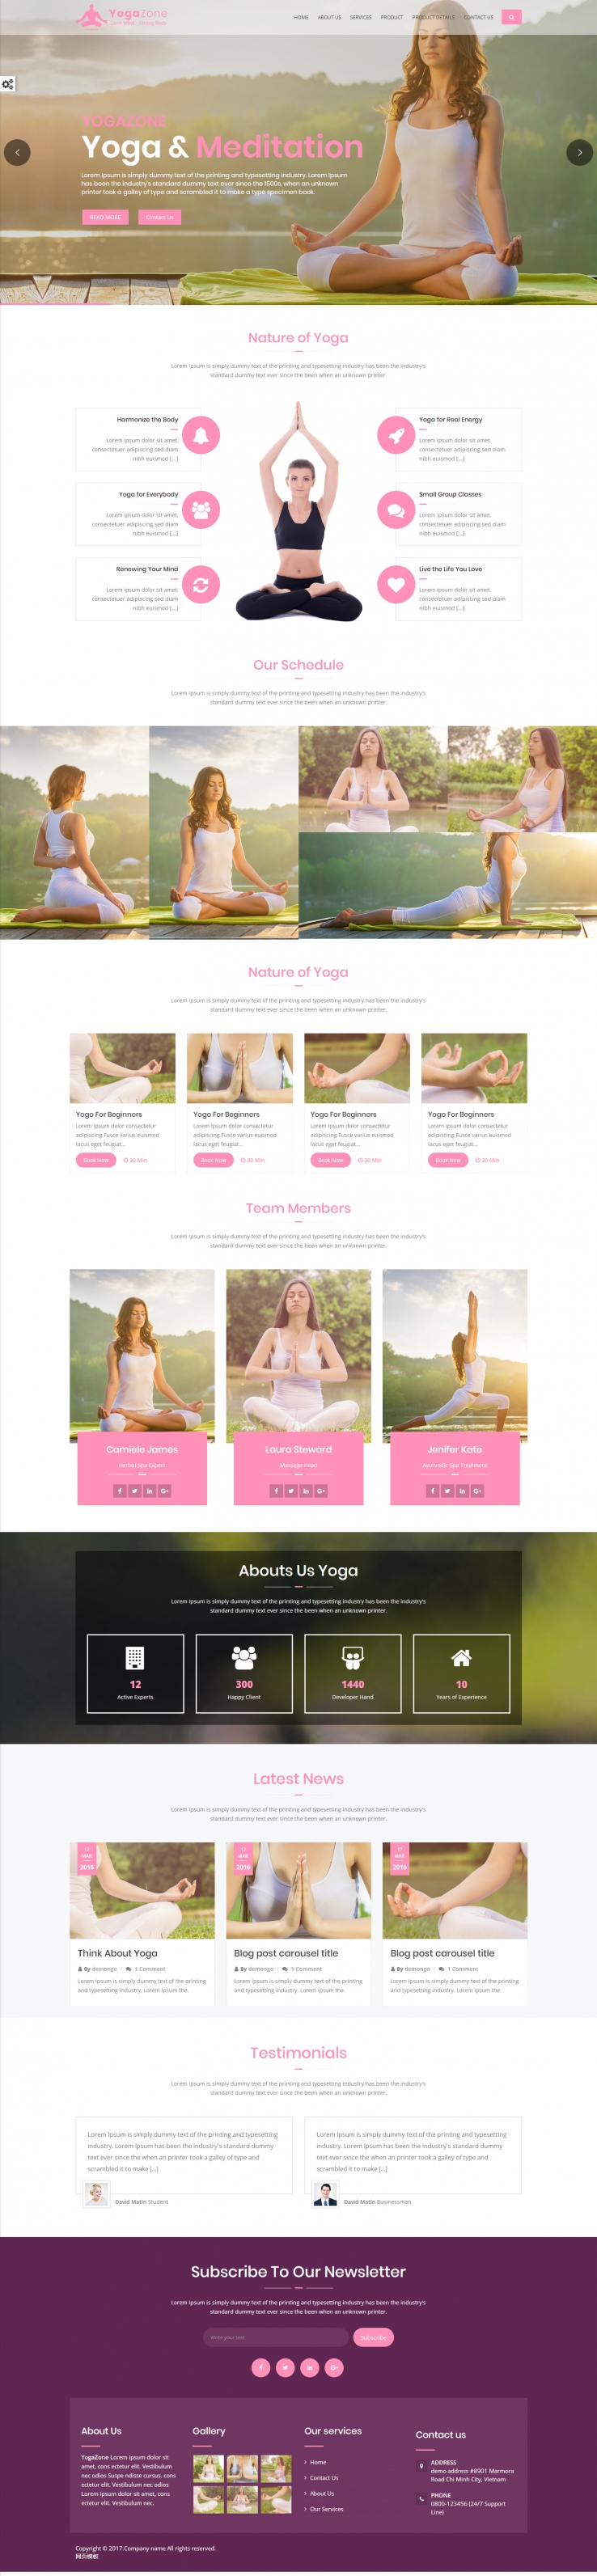 粉色宽屏风格的响应式瑜伽网站模板